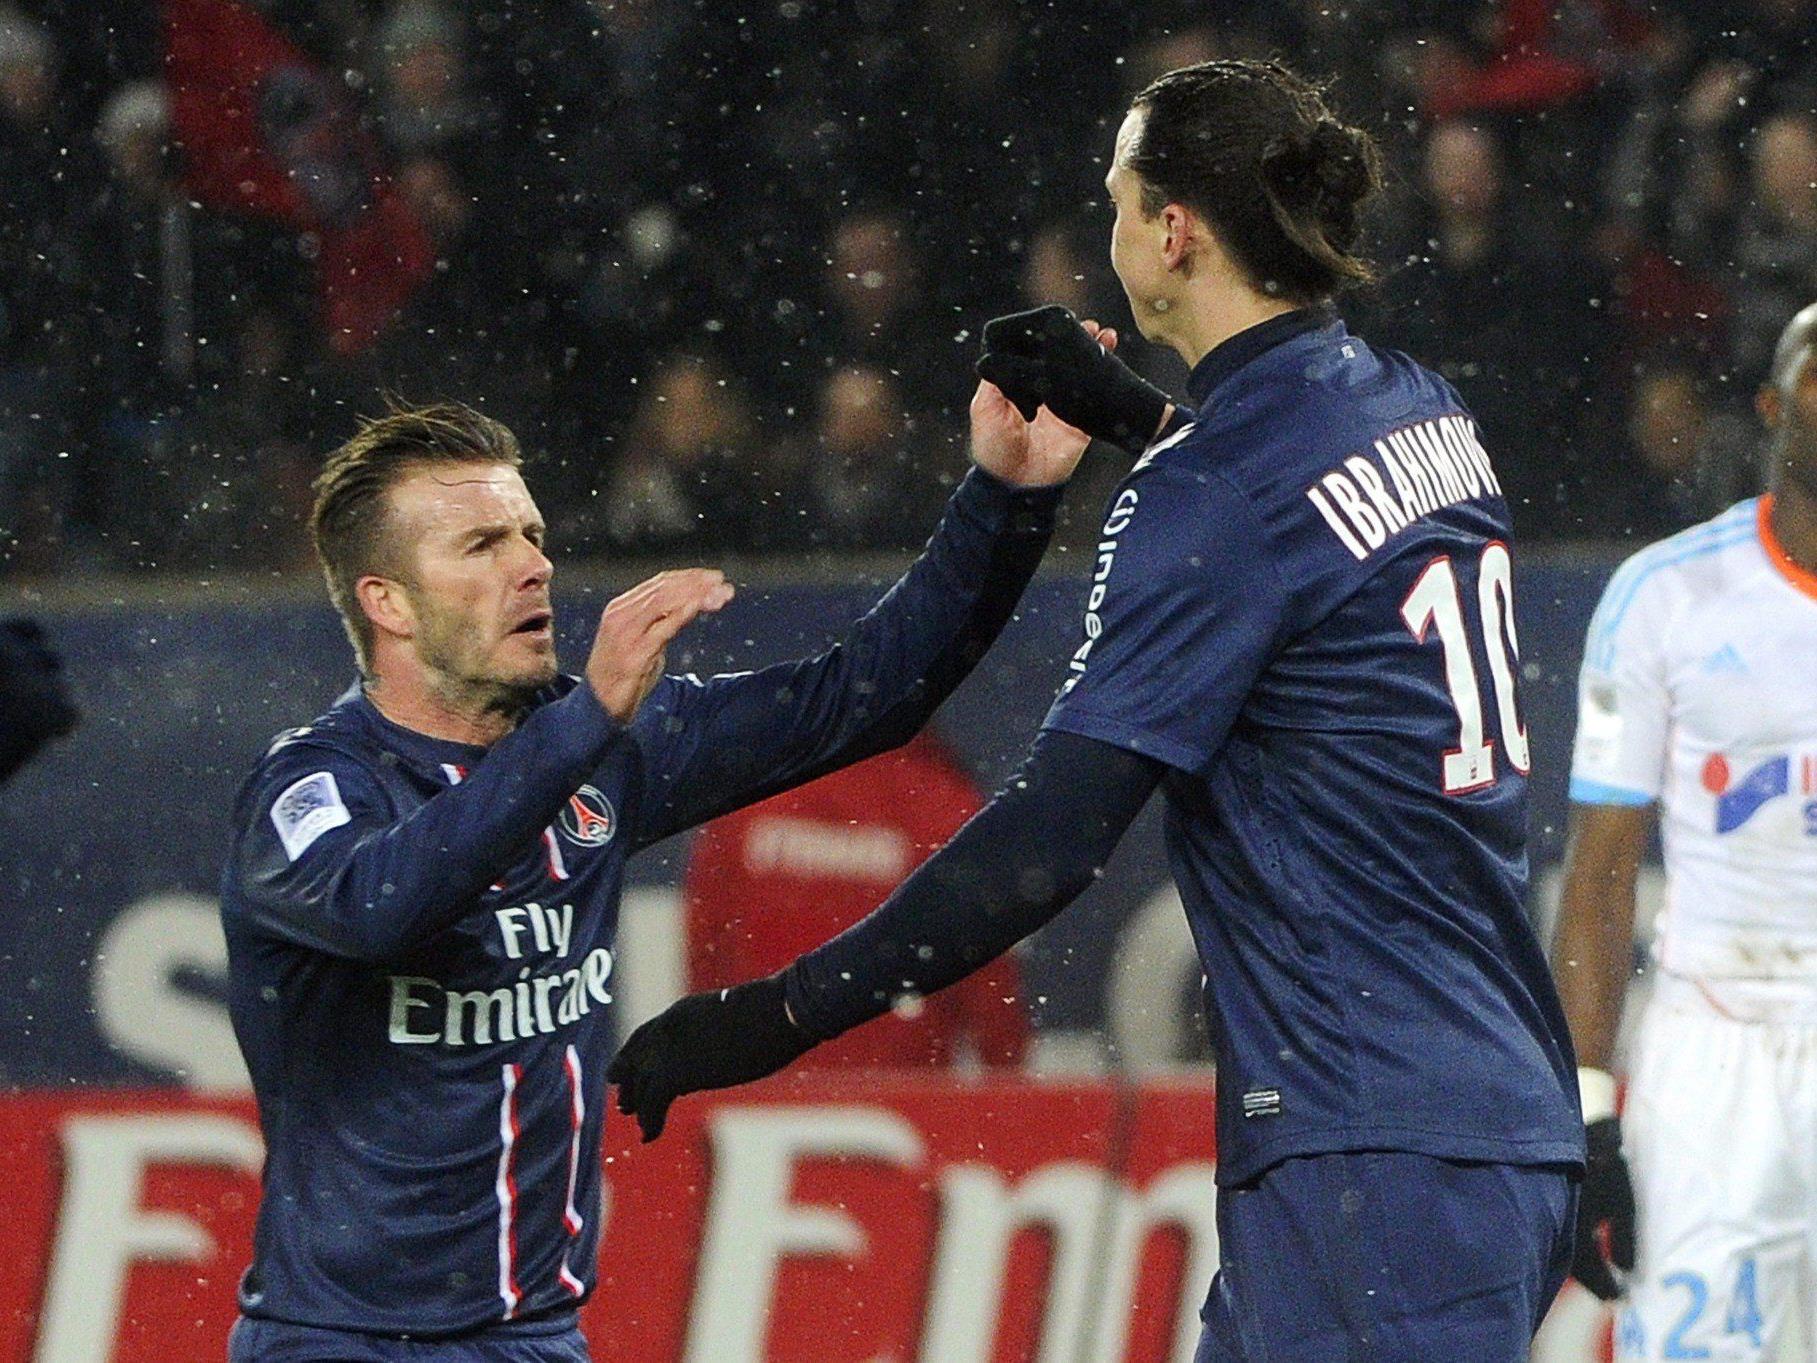 Zwei der zehn reichsten Fußballer spielen in Paris: David Beckham und Zlatan Ibrahimovic.